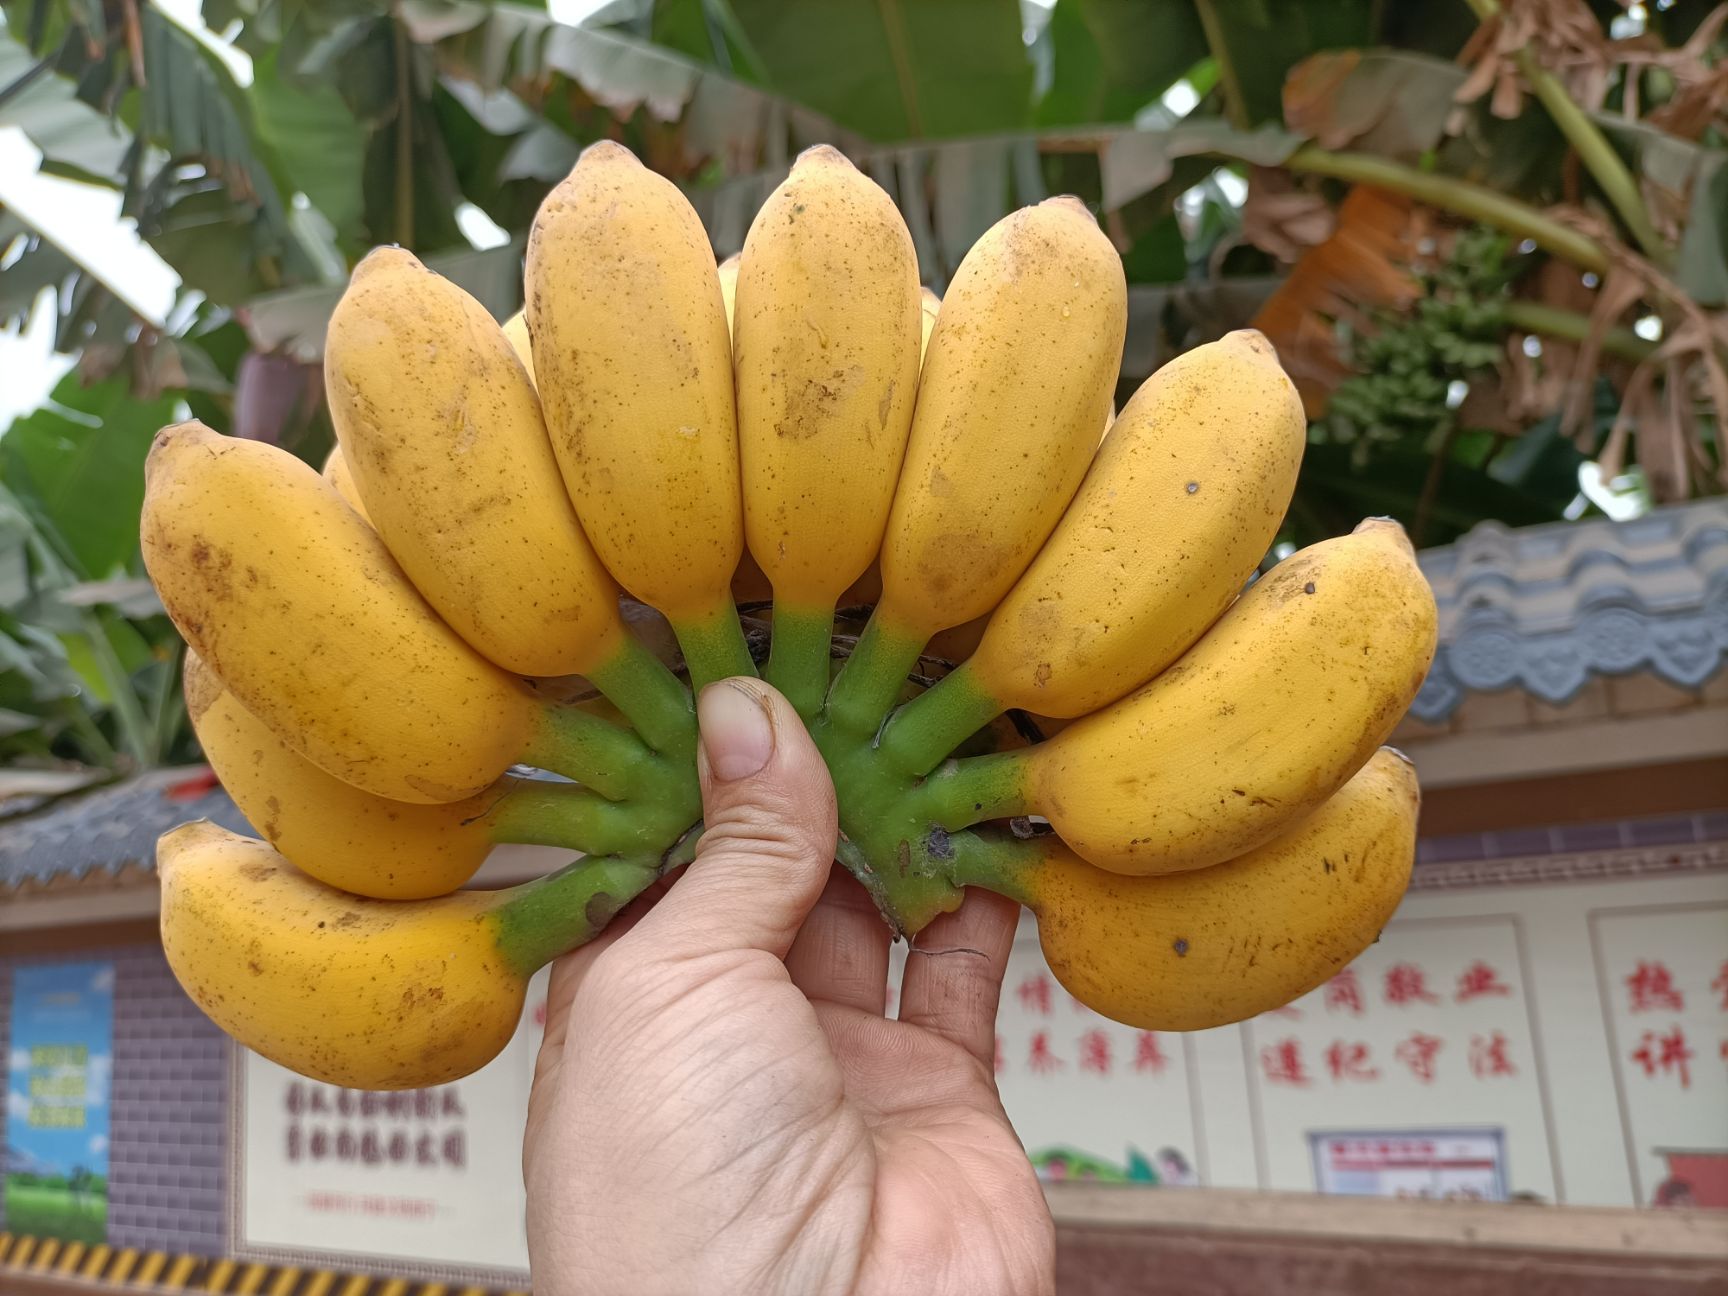 南宁自家种植小米蕉22.8元9斤净果包邮